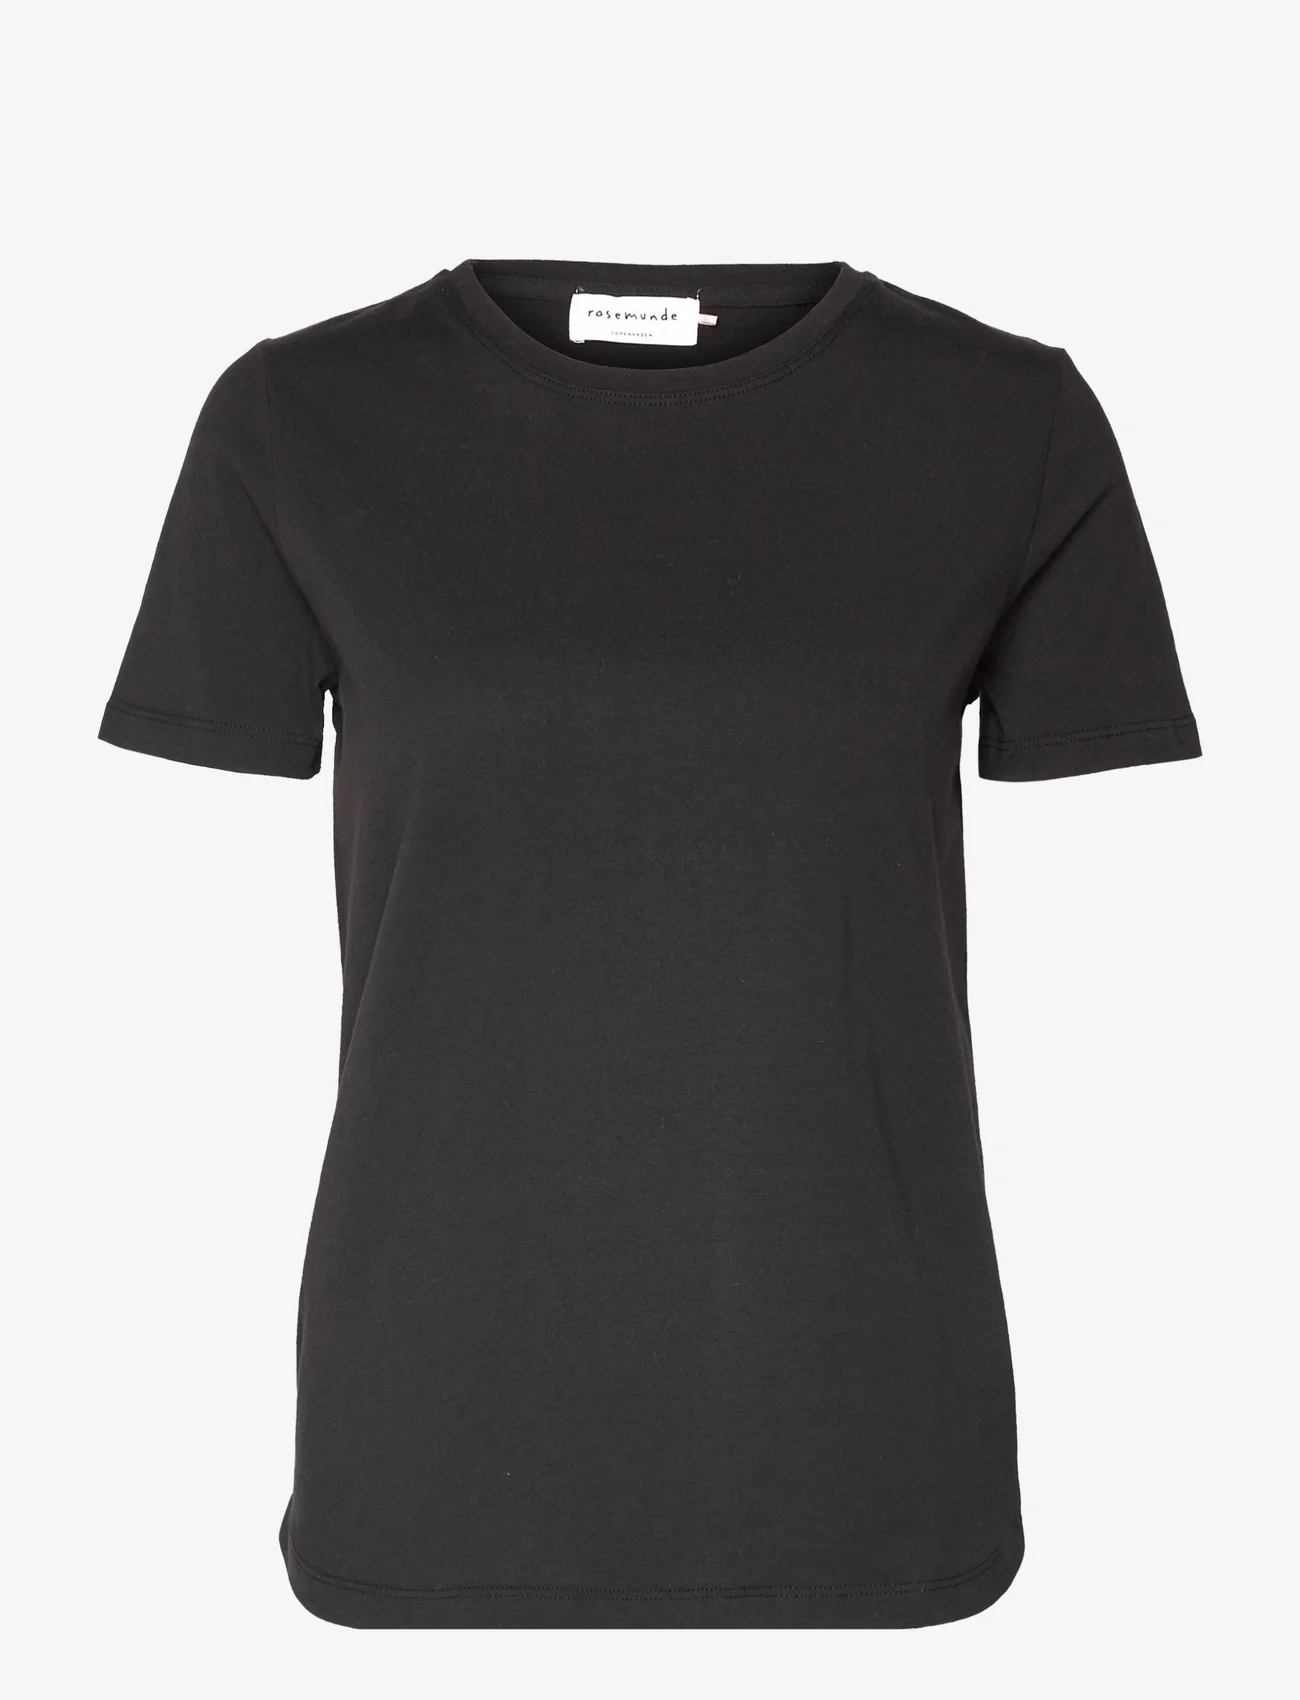 Rosemunde - Organic t-shirt - laveste priser - black - 0